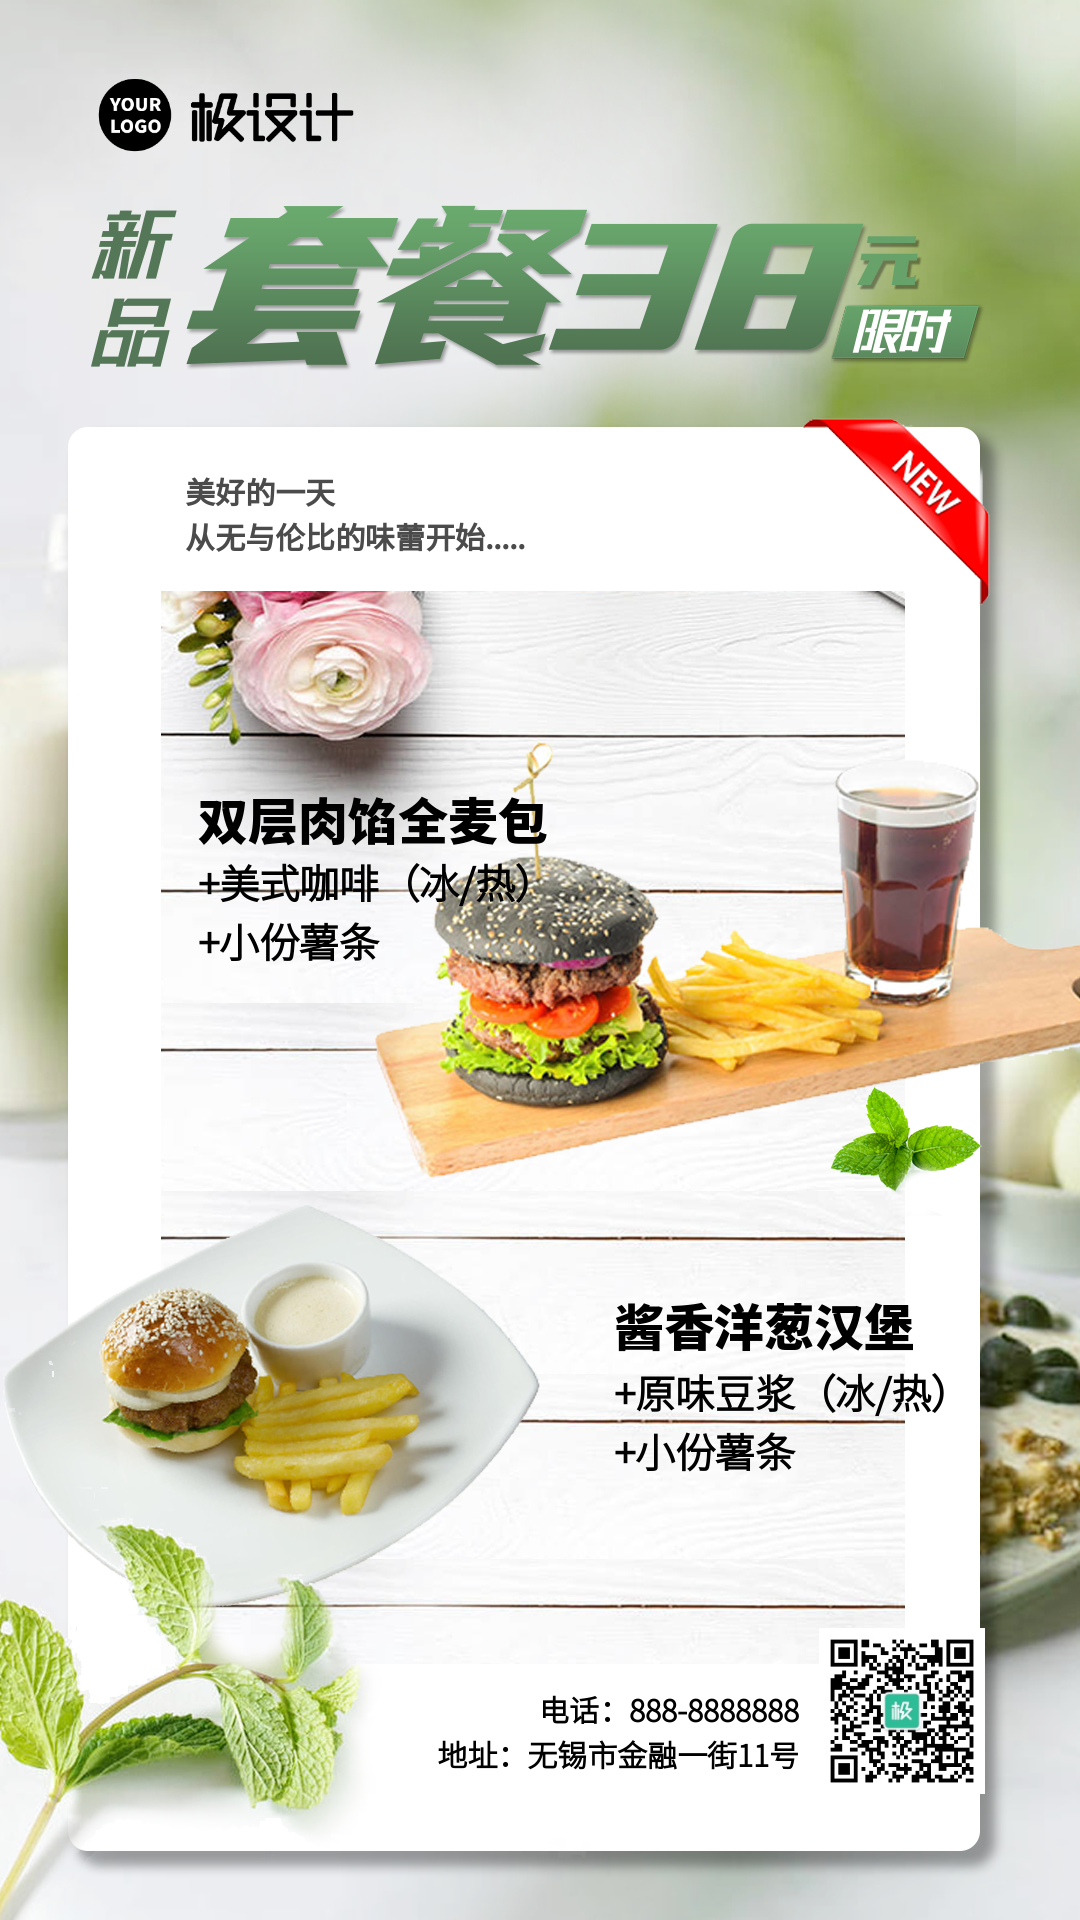 快餐小吃新品汉堡展示商业屏显海报-竖